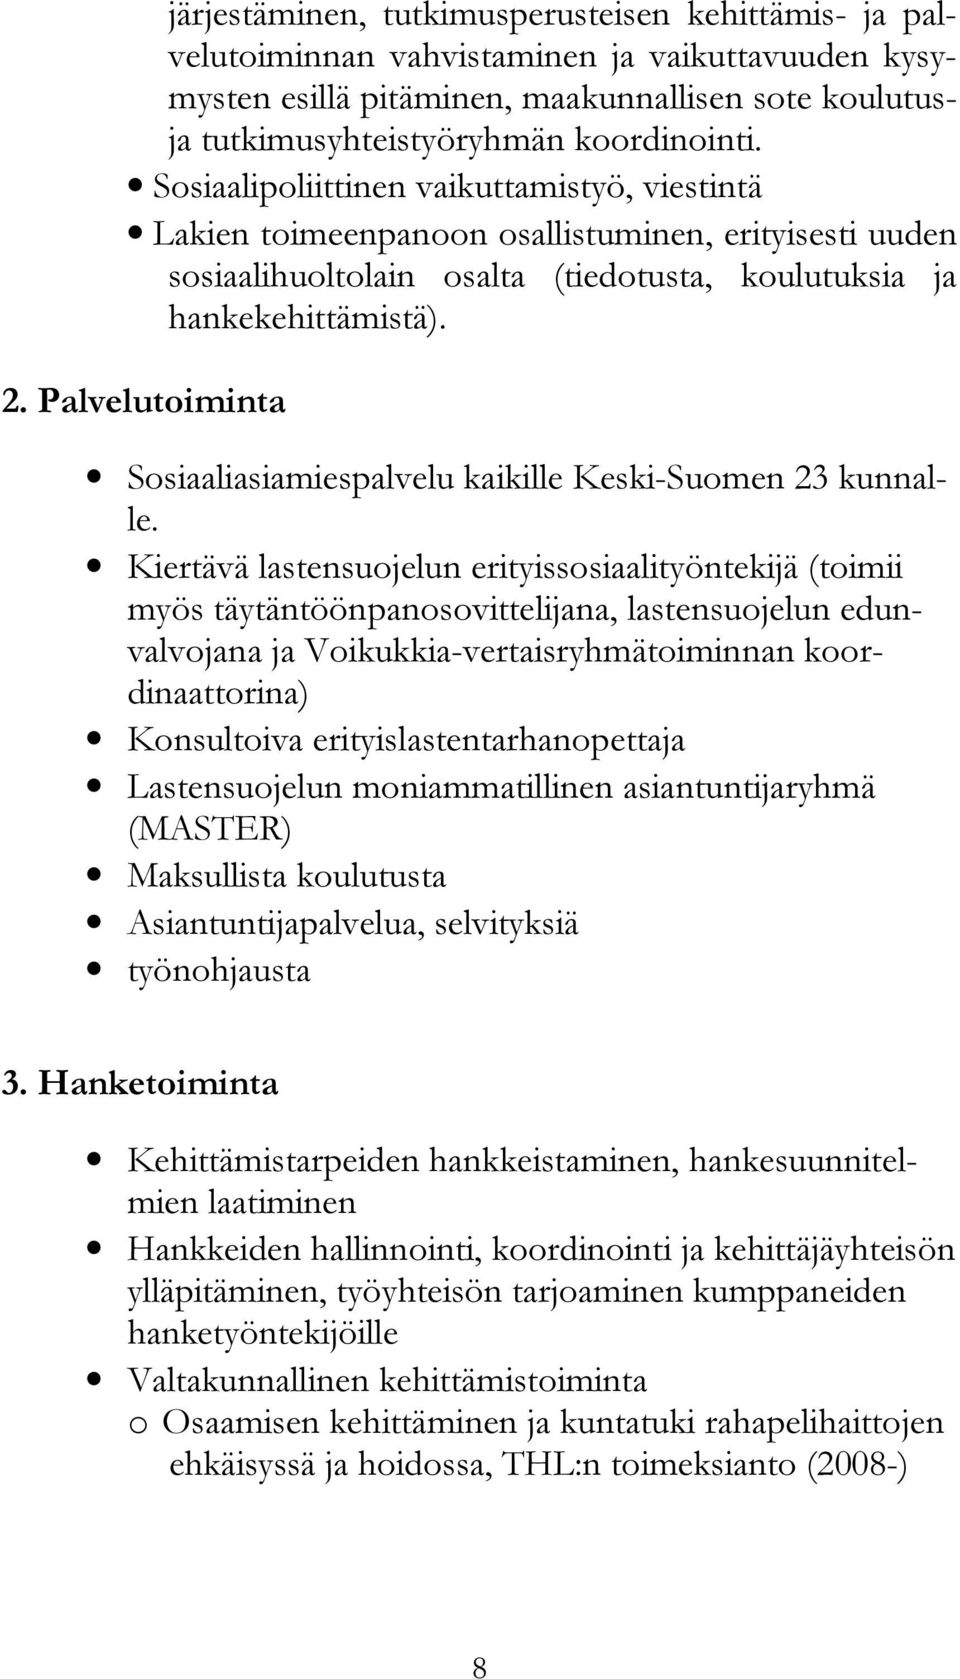 Palvelutoiminta Sosiaaliasiamiespalvelu kaikille Keski-Suomen 23 kunnalle.